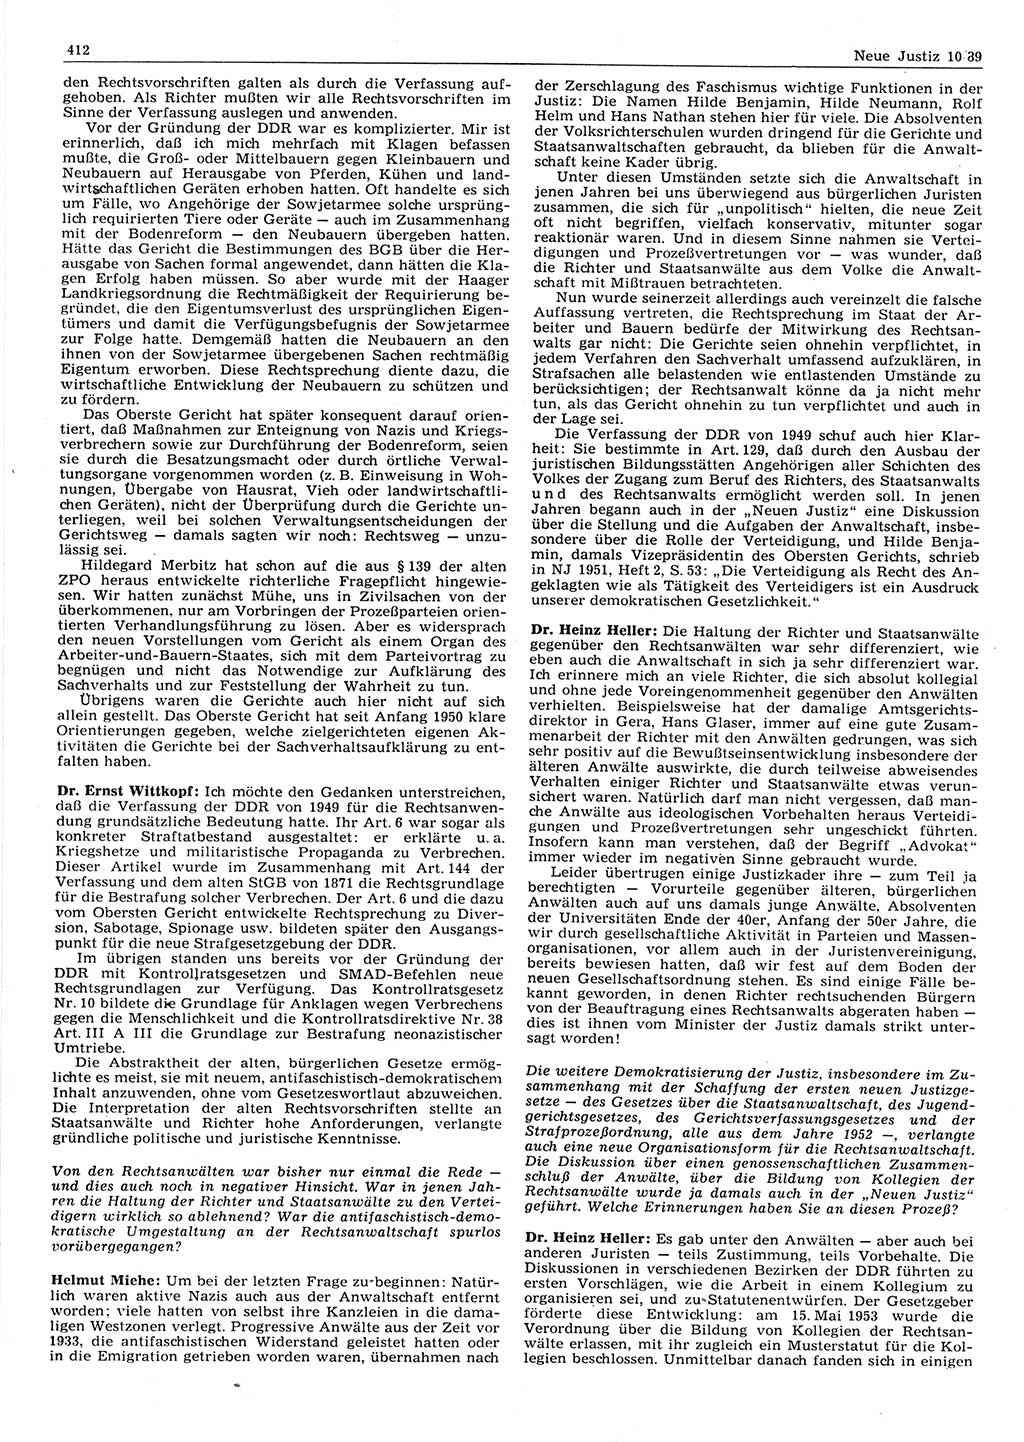 Neue Justiz (NJ), Zeitschrift für sozialistisches Recht und Gesetzlichkeit [Deutsche Demokratische Republik (DDR)], 43. Jahrgang 1989, Seite 412 (NJ DDR 1989, S. 412)